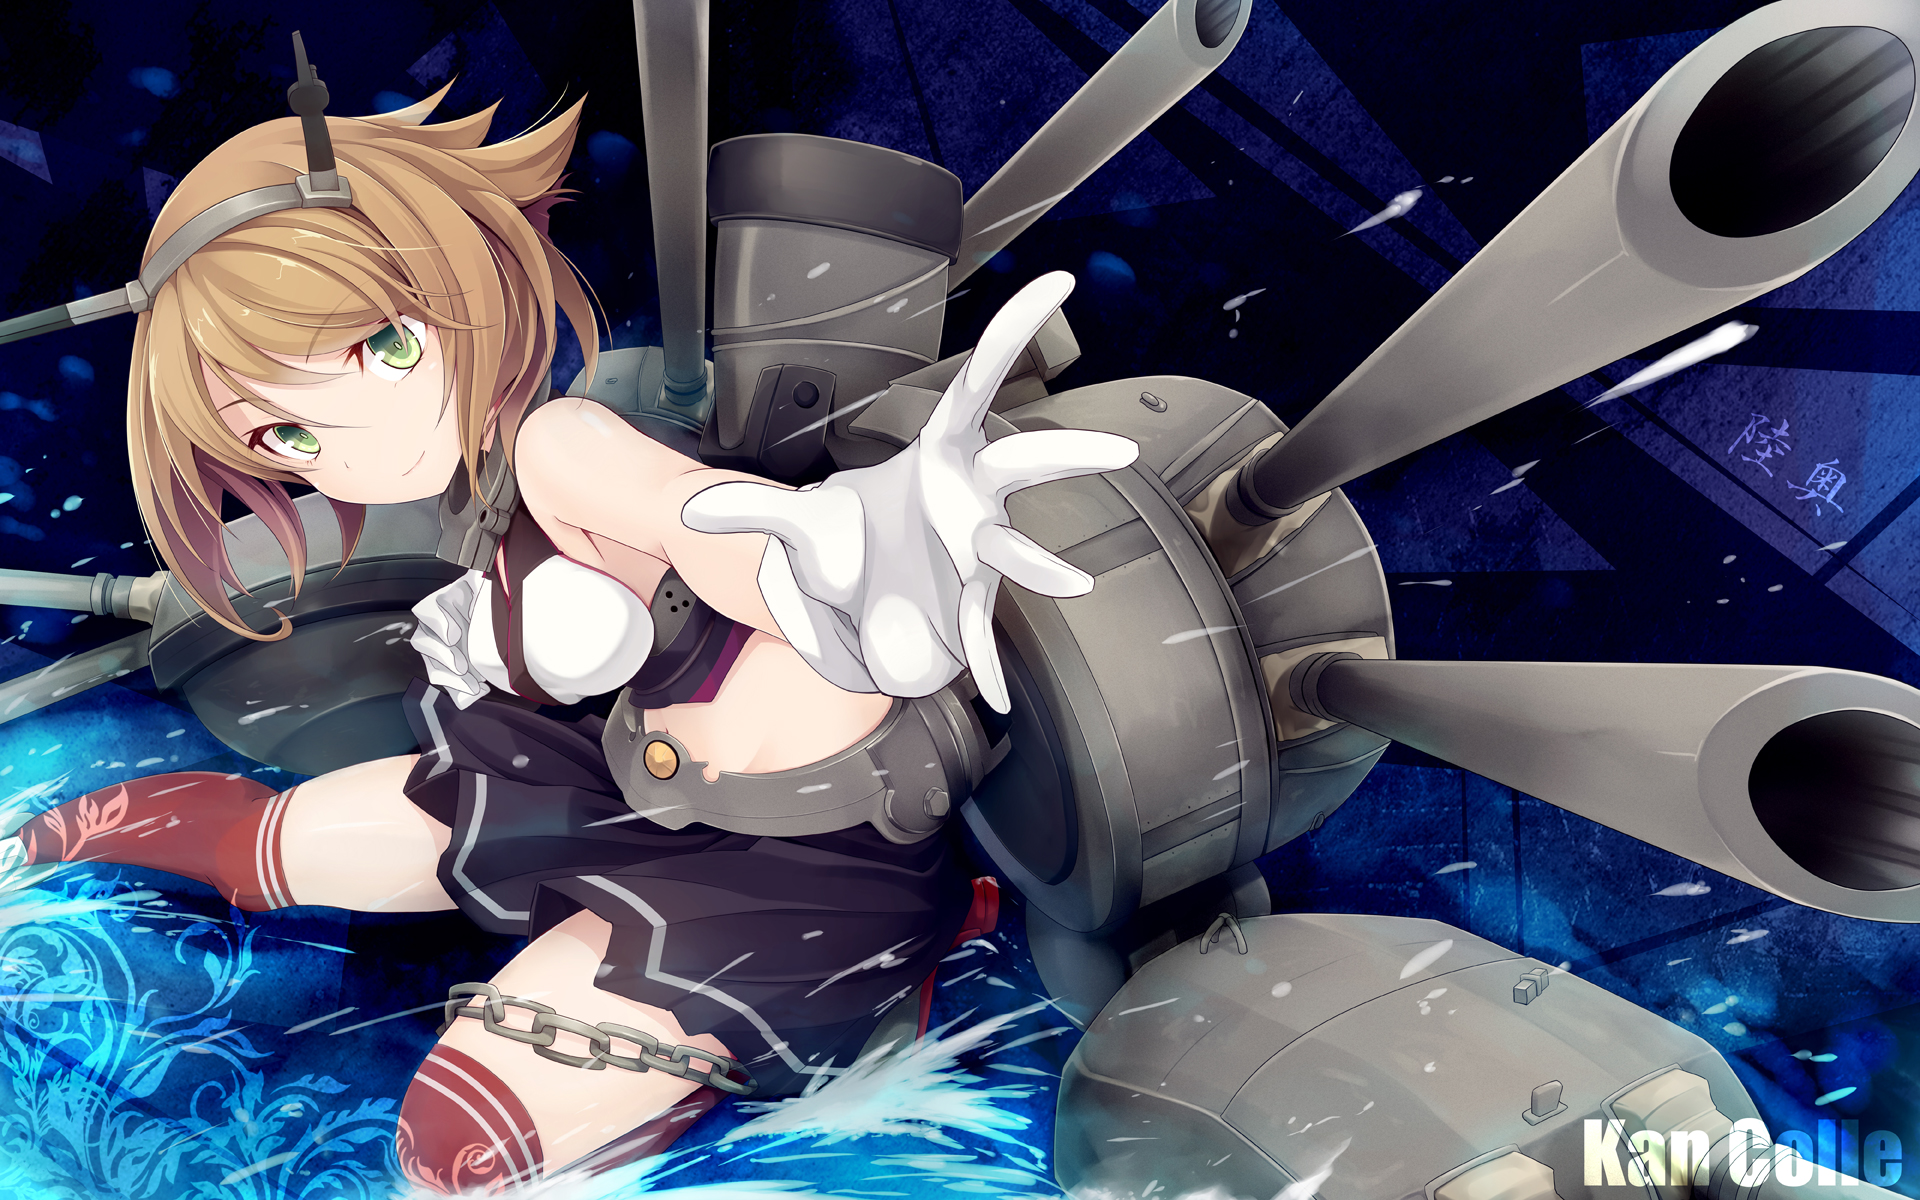 Nagato Class Battleship Mutsu Hd Wallpaper Background Image 19x10 Id Wallpaper Abyss